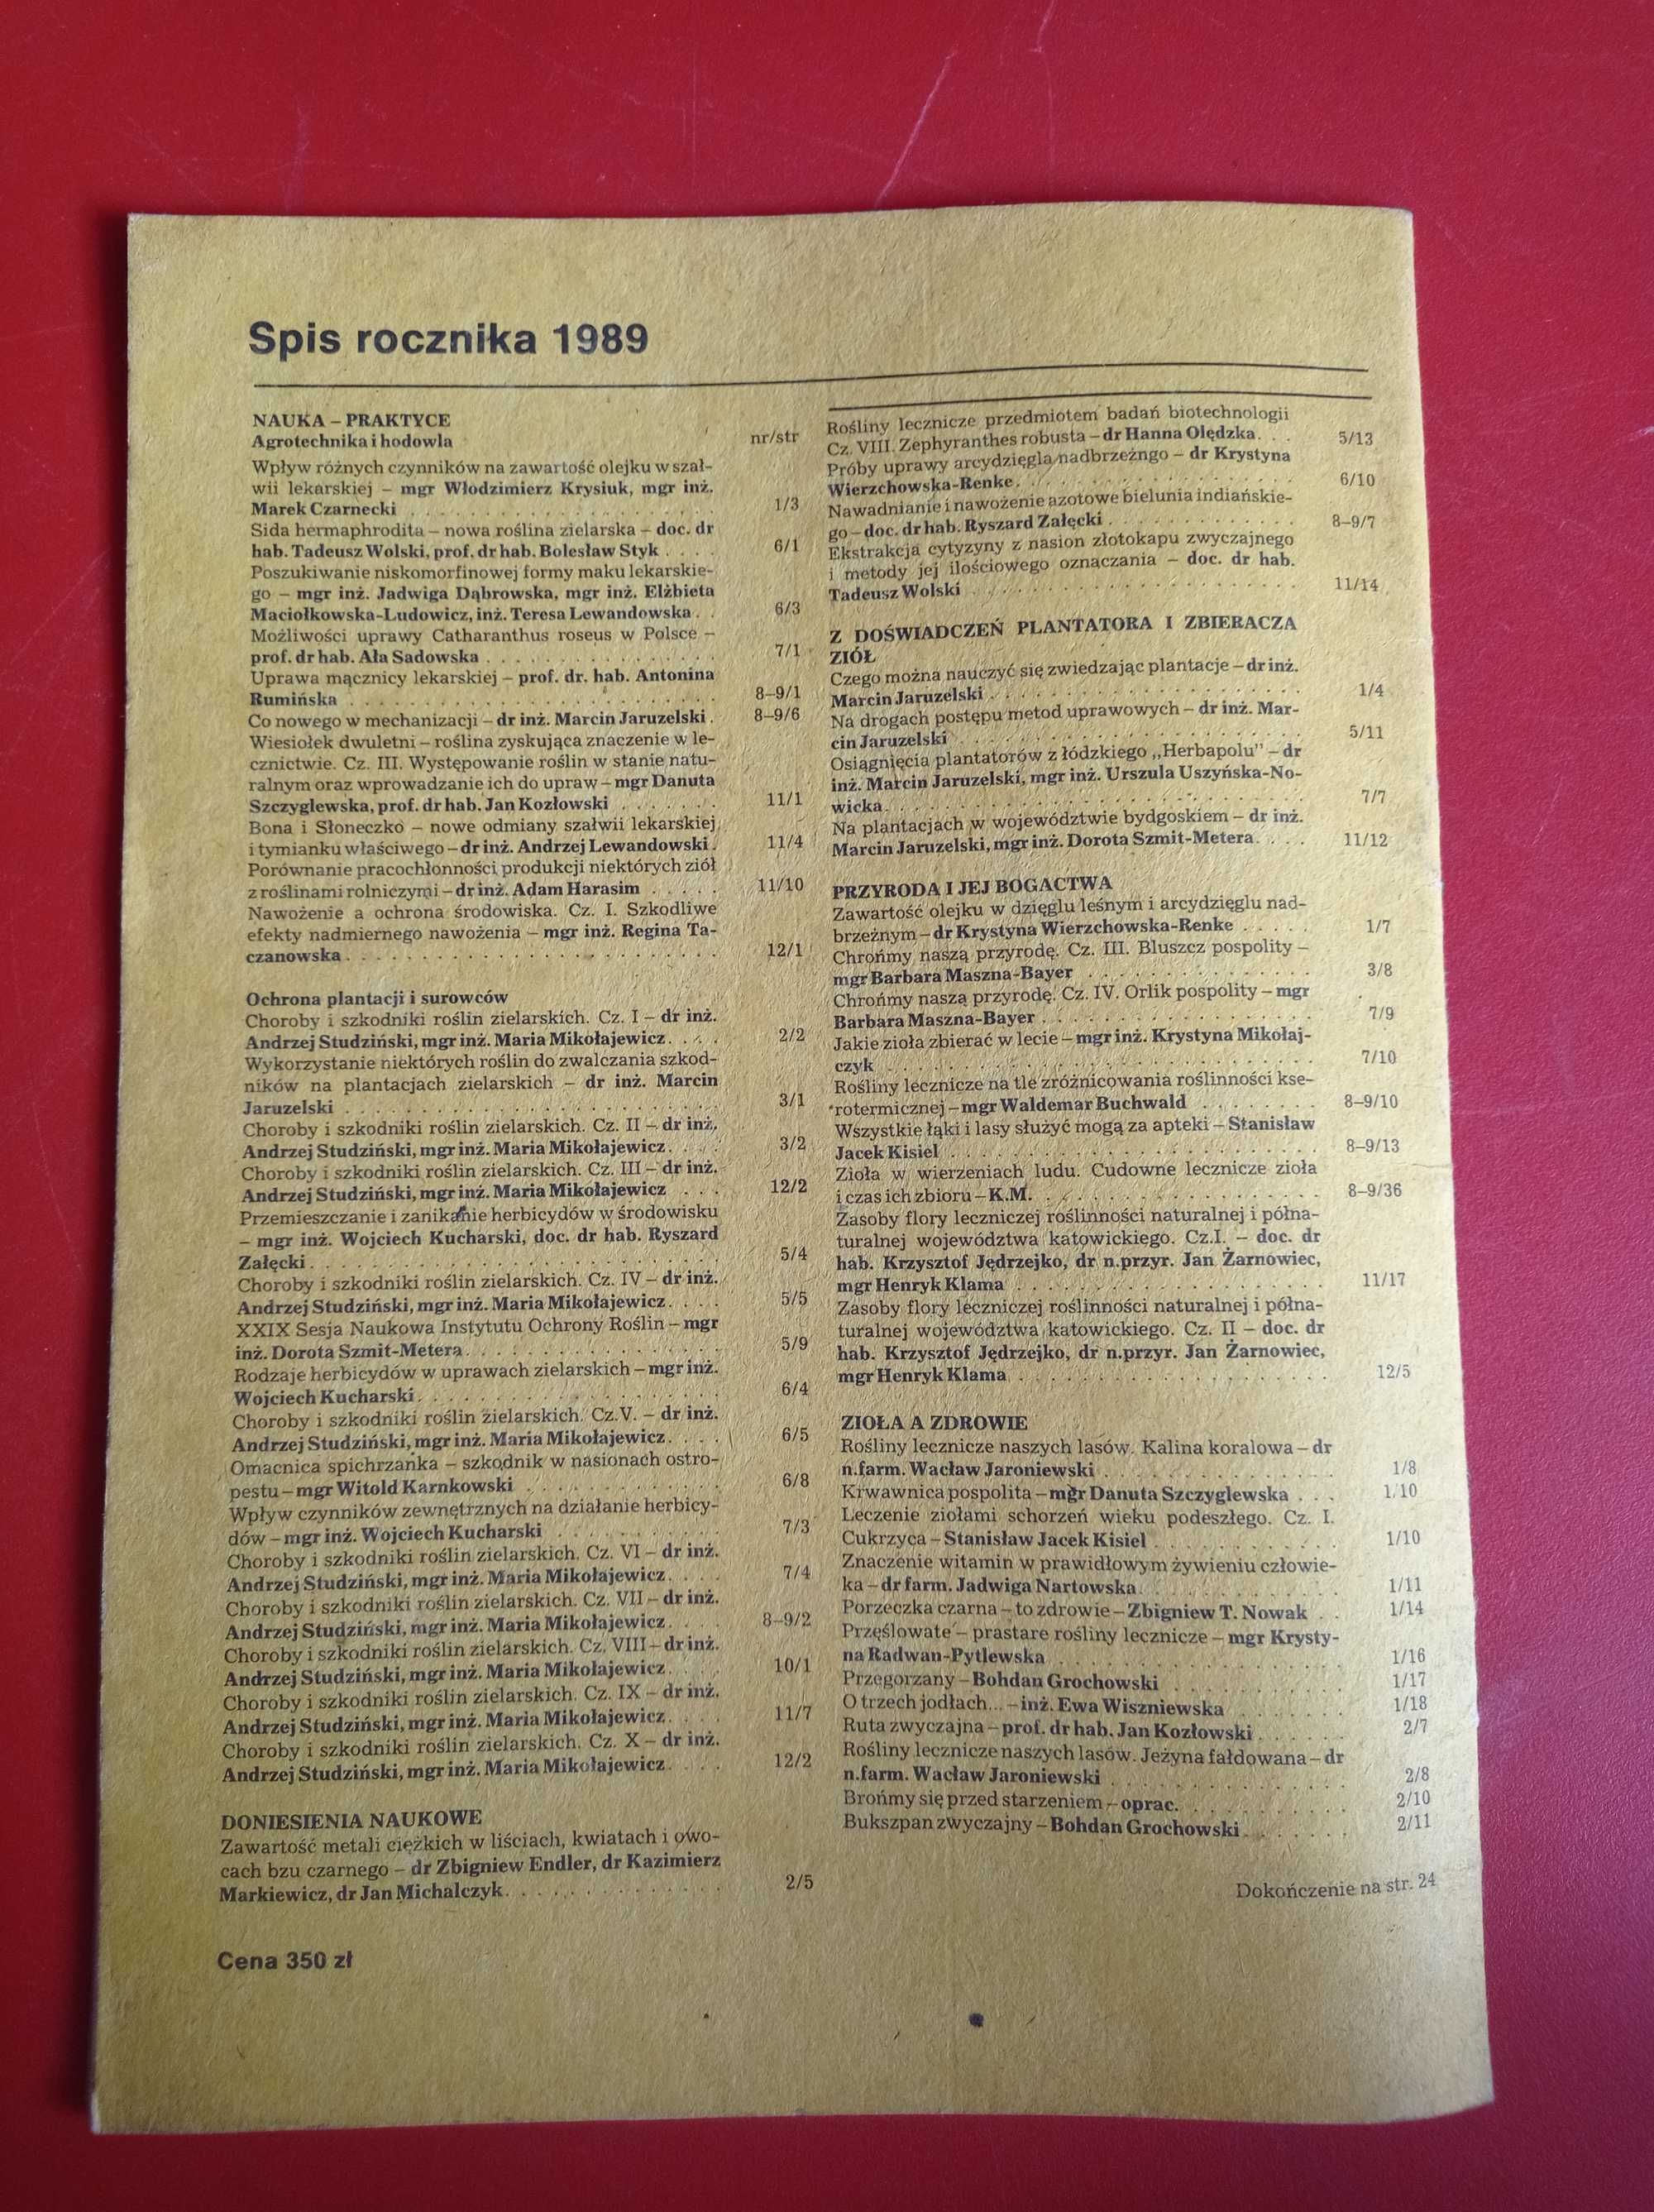 Wiadomości zielarskie nr 5/1989, maj 1989